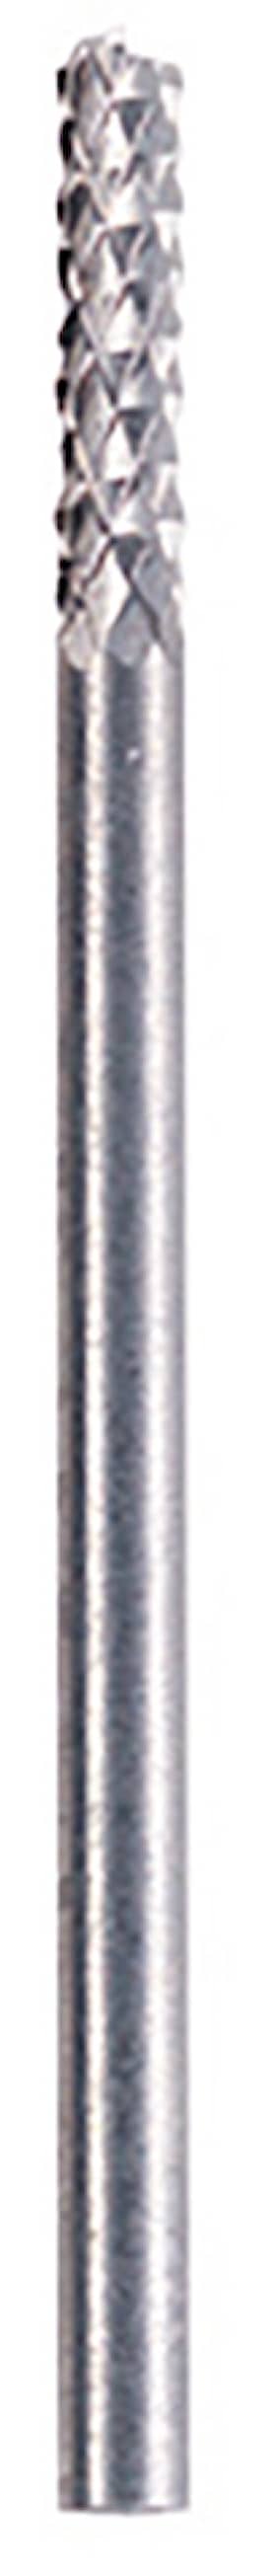 Dremel Karbiditerä saumojen poistoa varten, 3,2 mm (570)